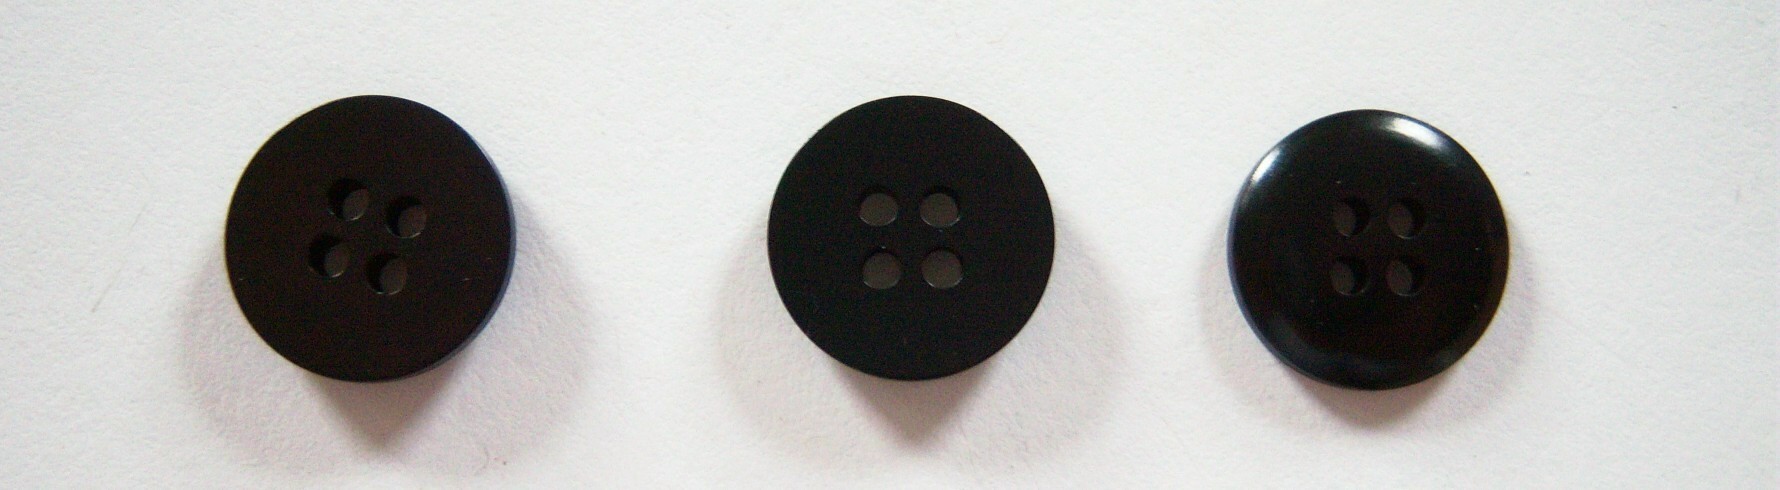 Black 9/16" Poly Button